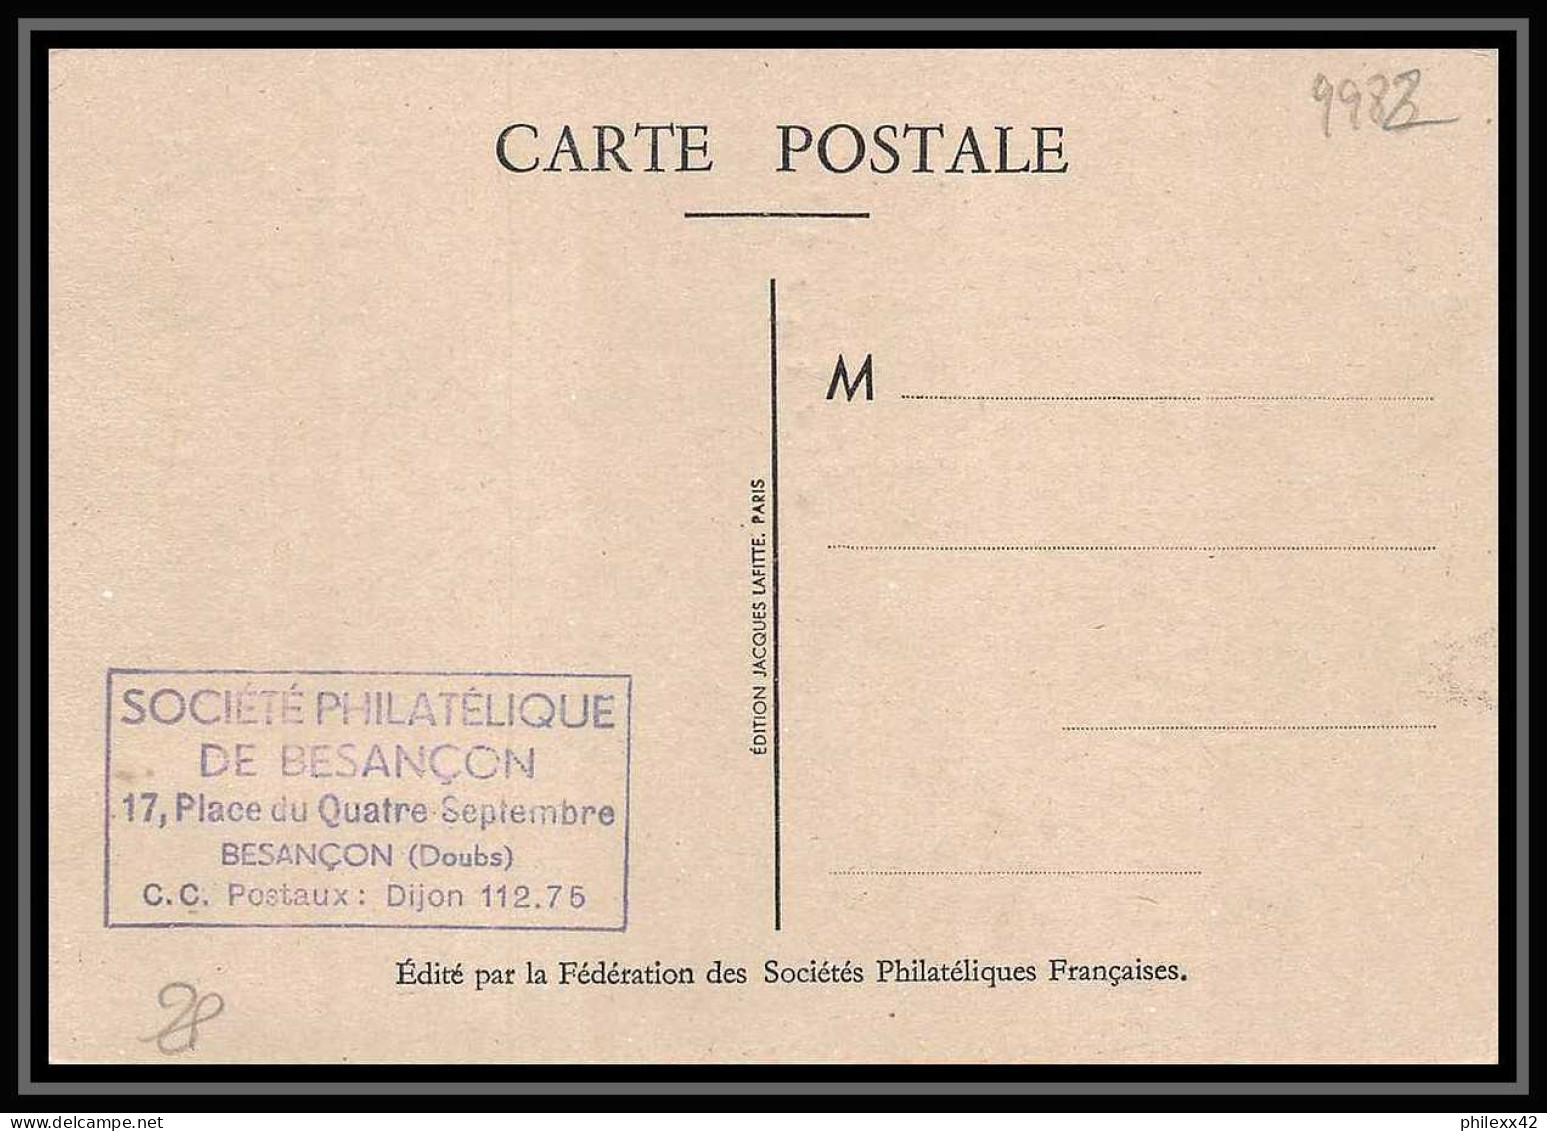 9982 N°779 Journée Du Timbre 1947 Besancon Doubs France Carte Maximum Card - ....-1949